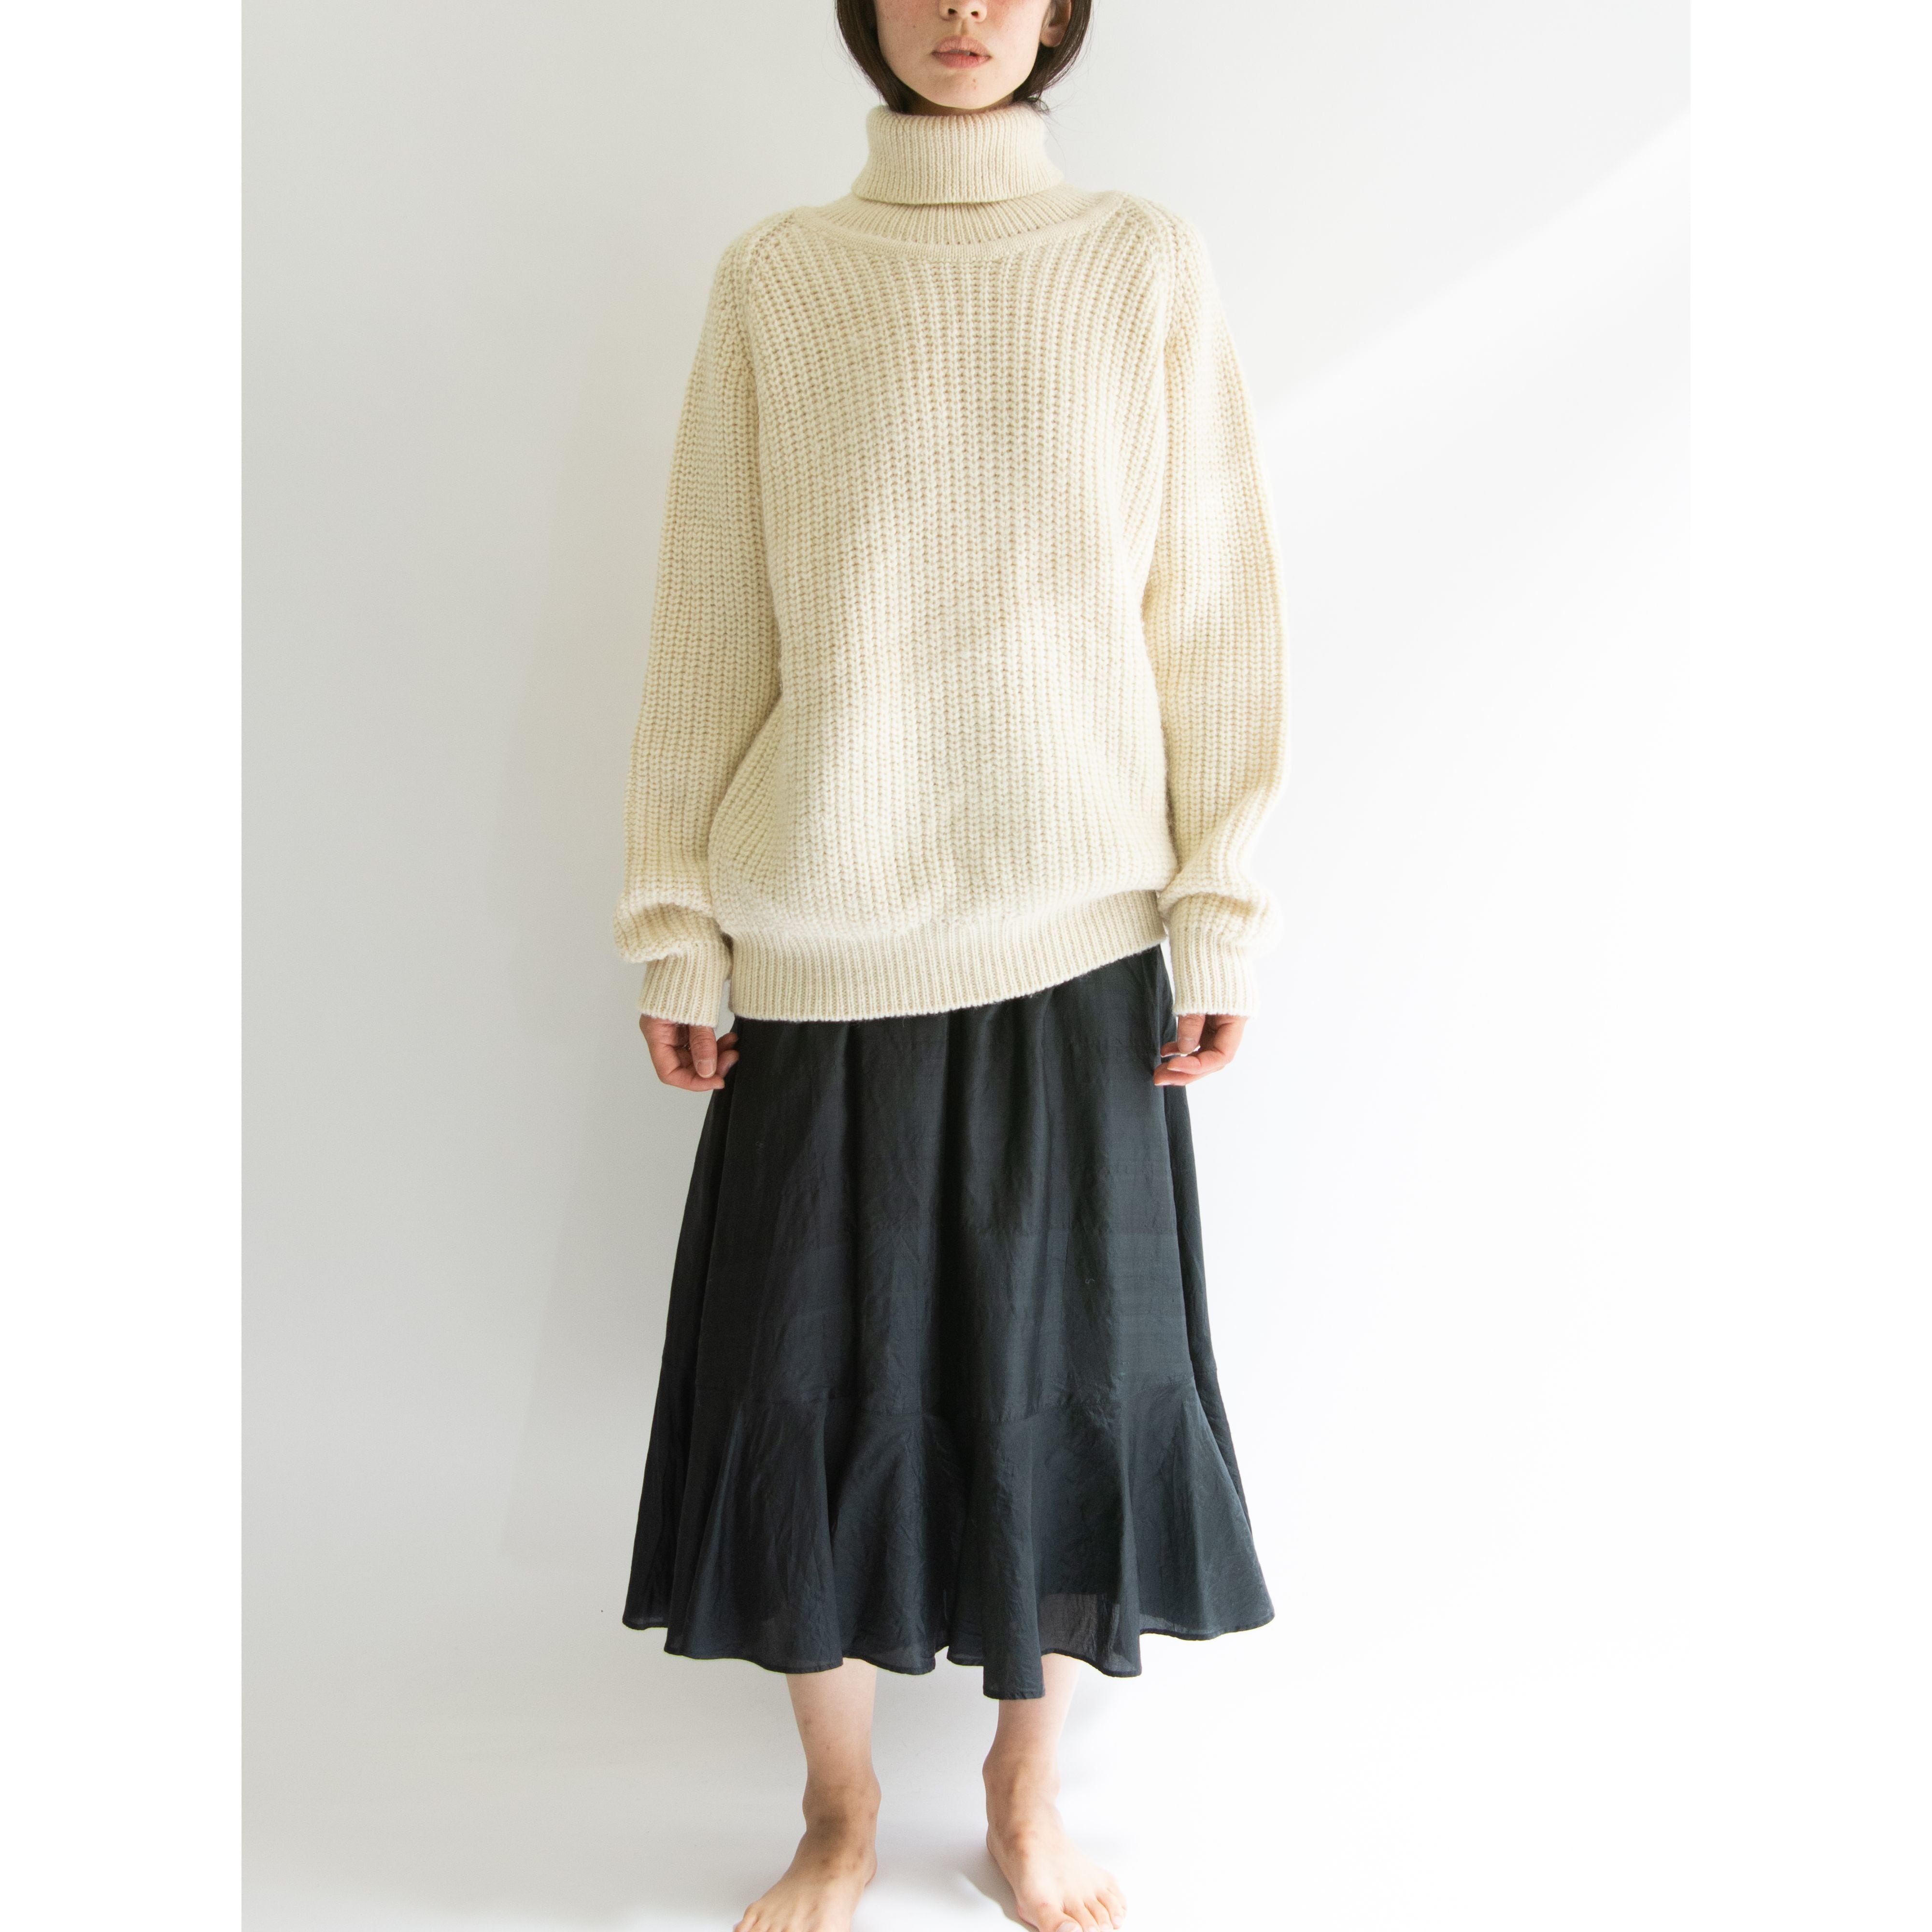 KENZO JAP】Made in Japan 70-80's 100% Silk Flare Skirt（ケンゾー 